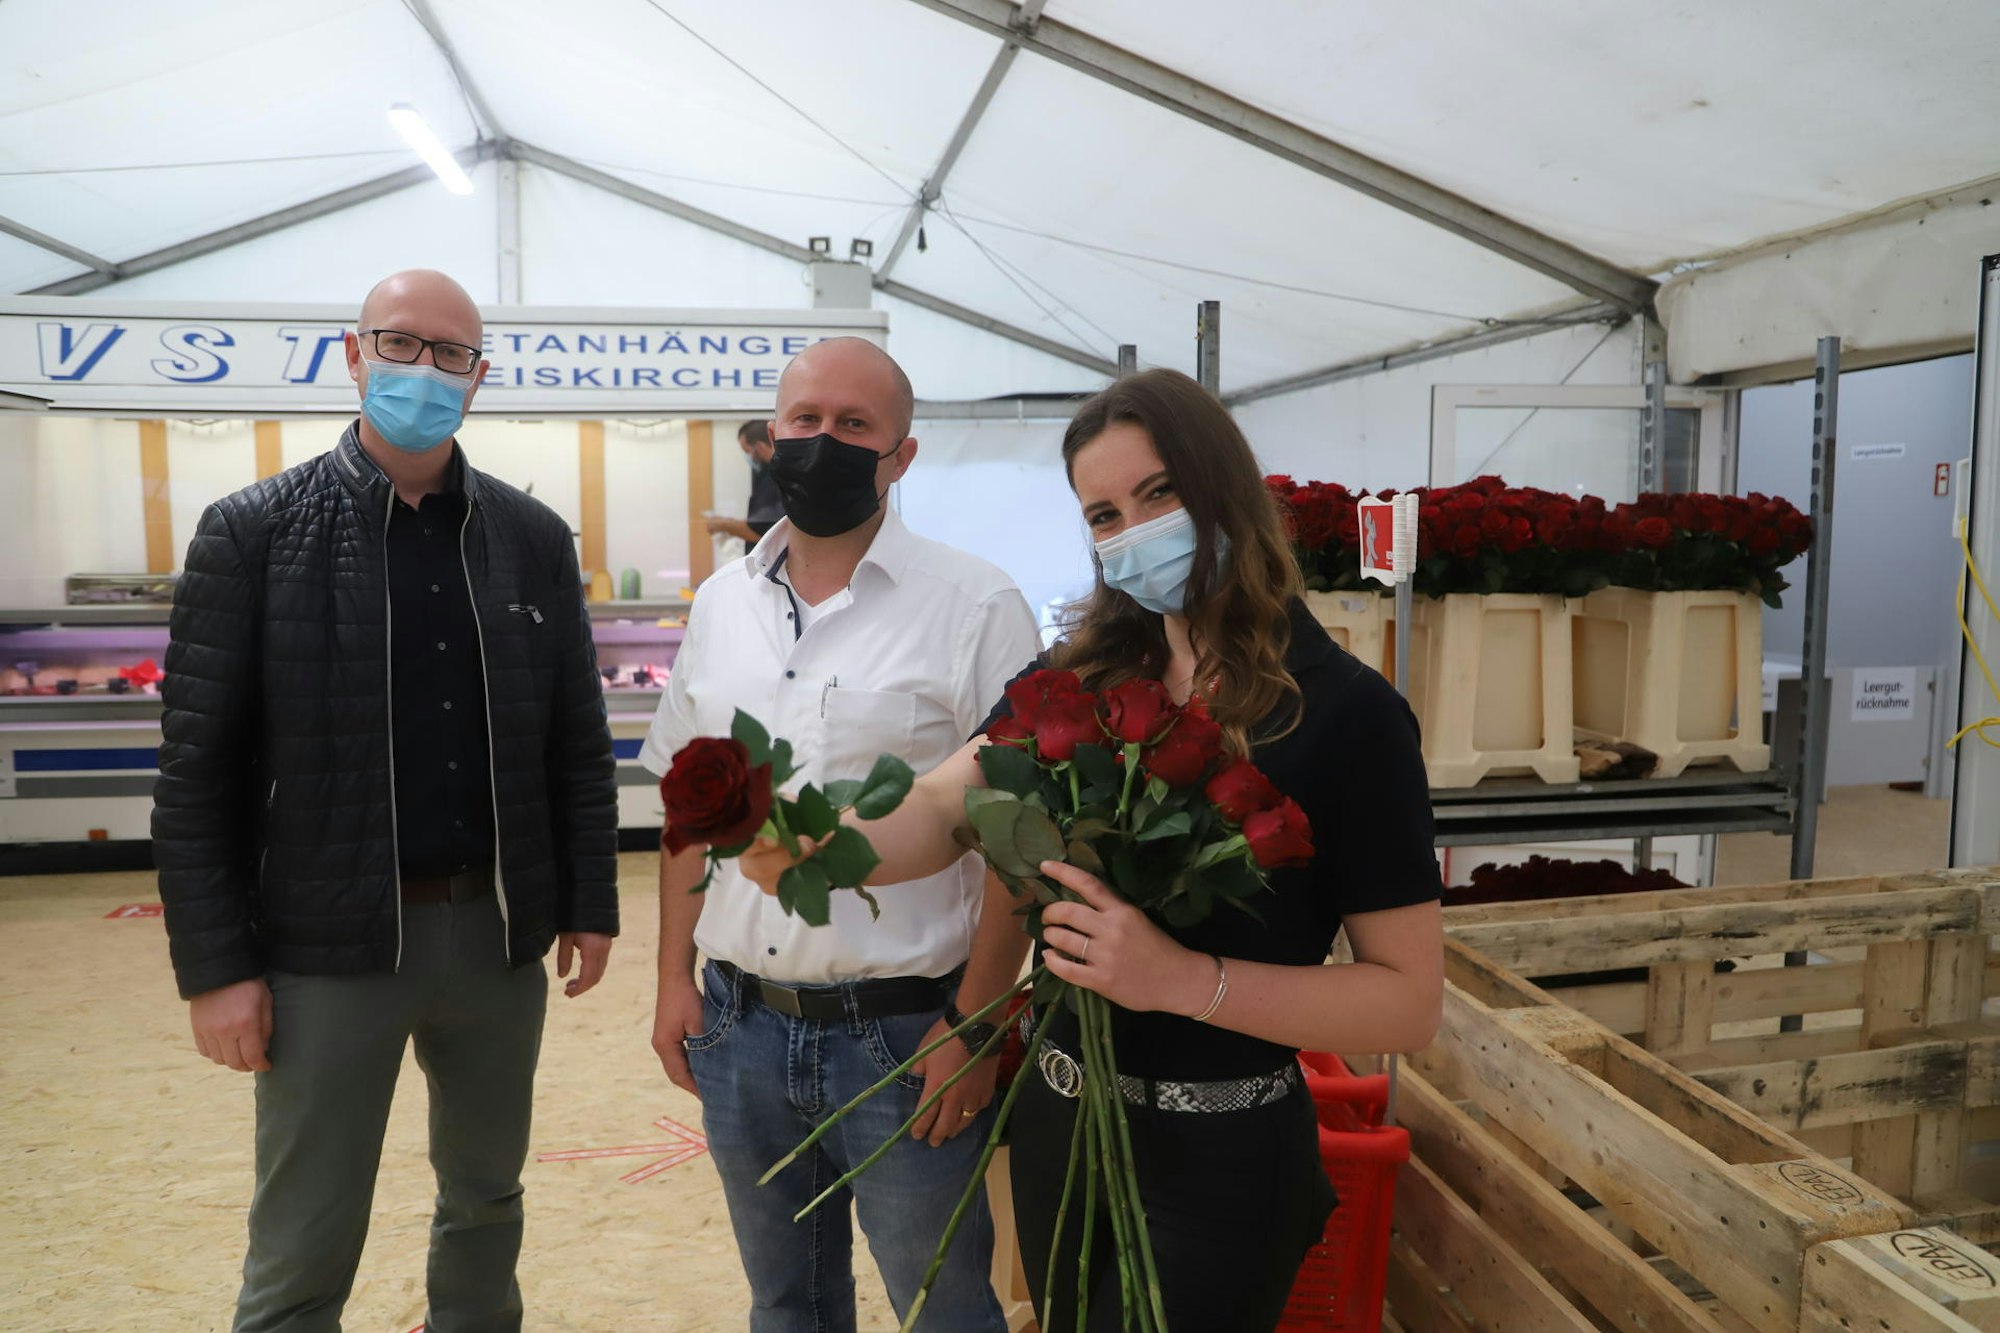 Mit einer Rose begrüßte Sandra Lange die Kunden, Michael Rieck (M.) und Ingo Pfennings freuten sich über die Eröffnung.